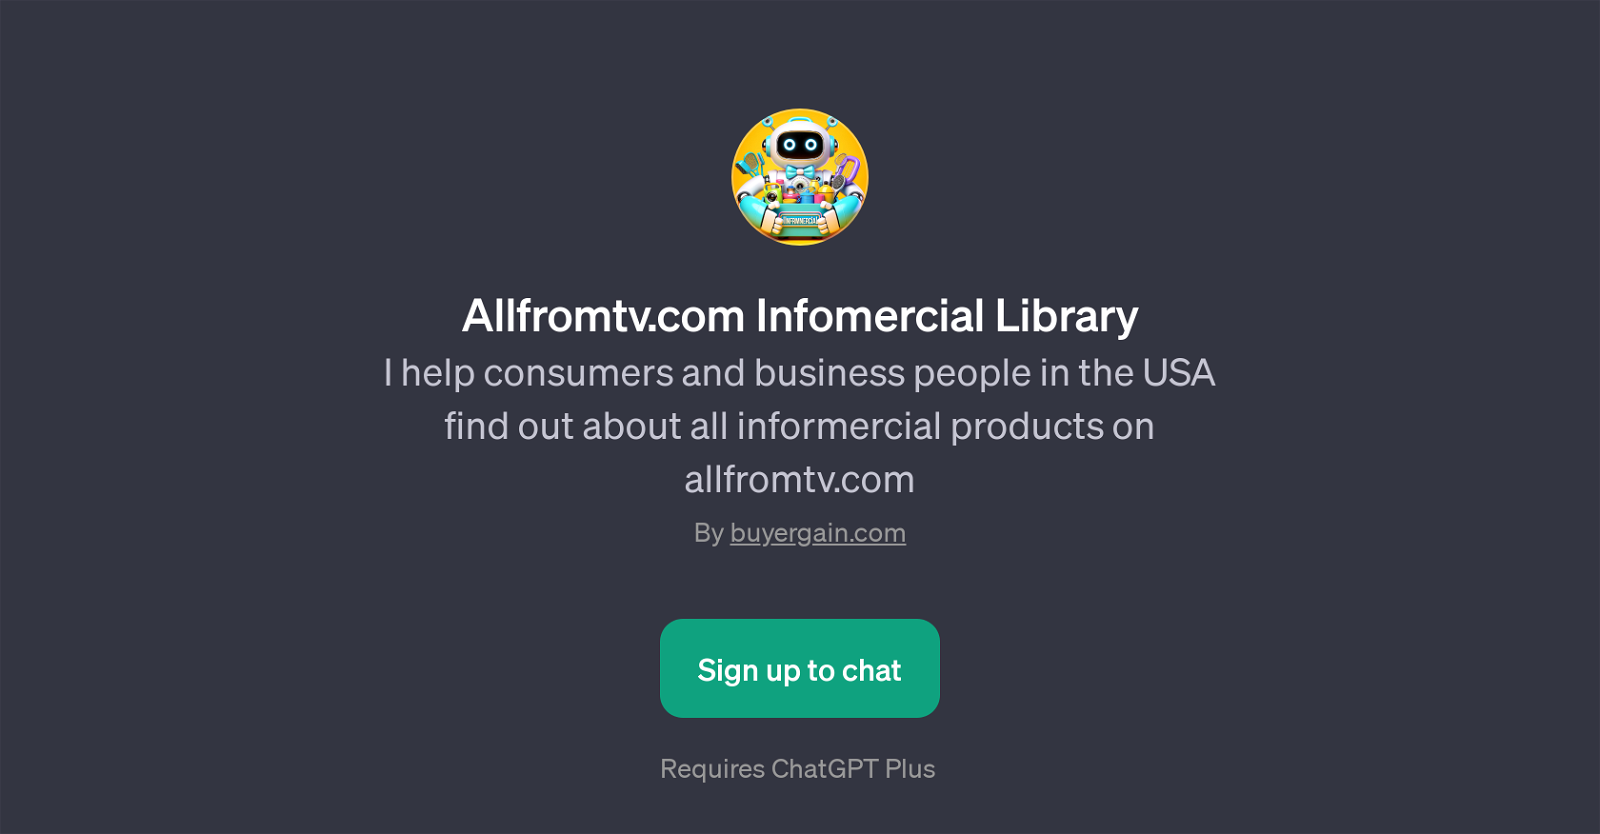 Allfromtv.com Infomercial Library website